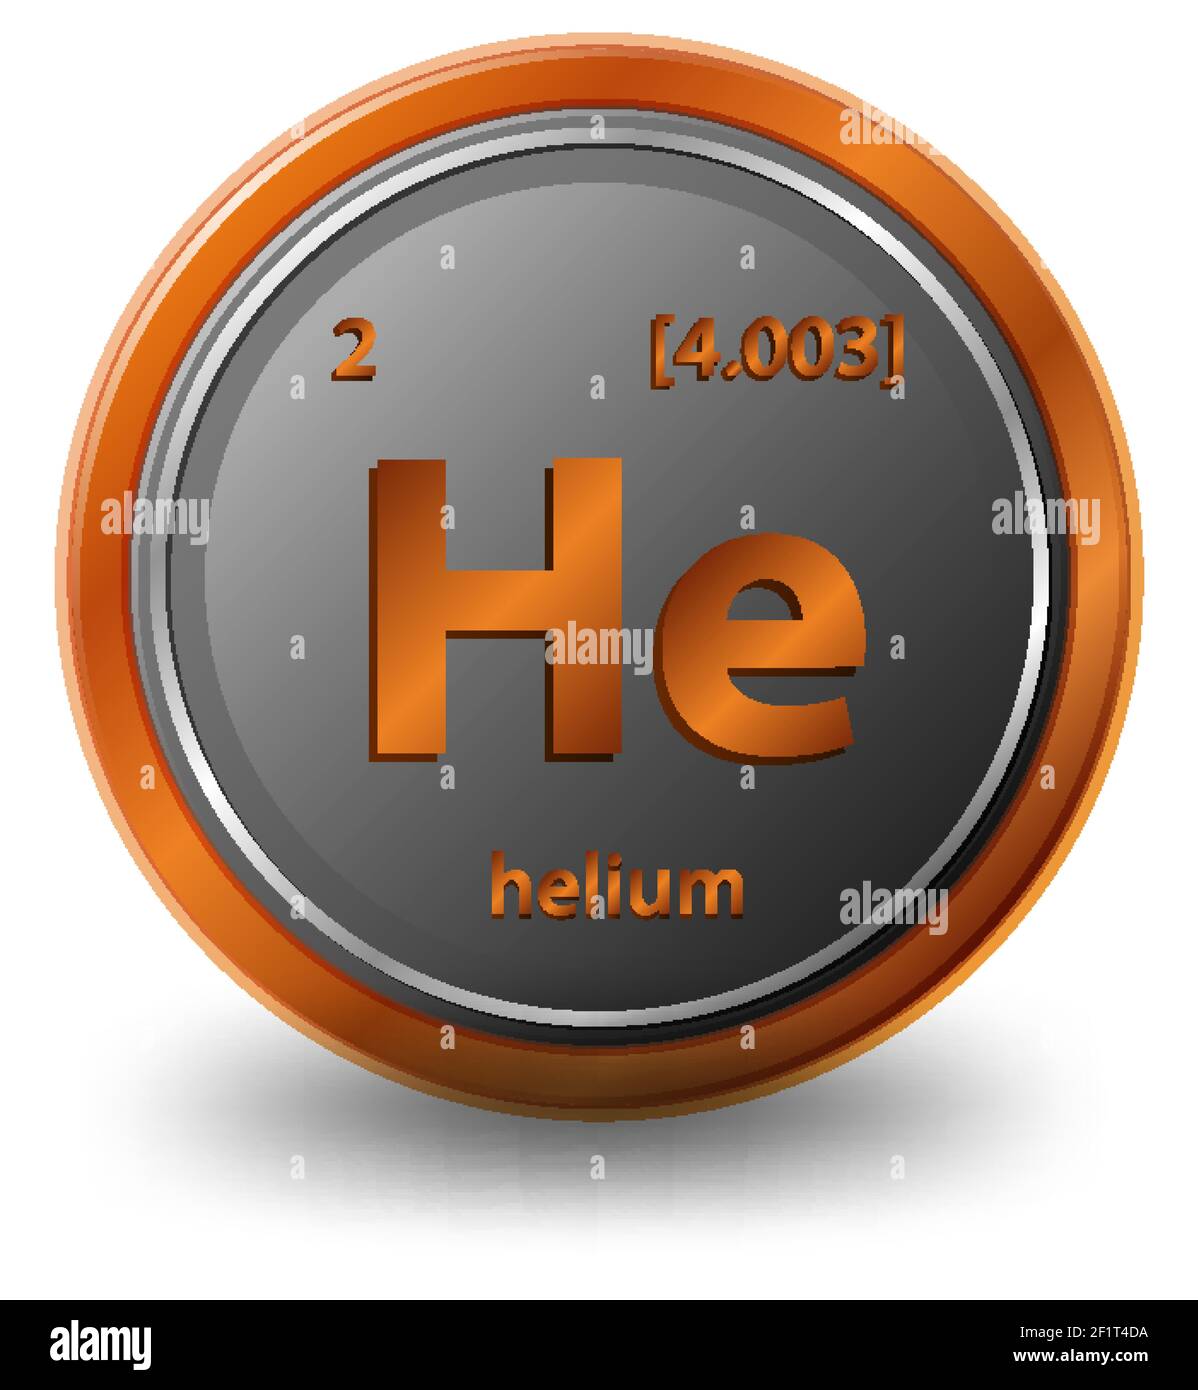 Chemisches Helium-Element. Chemisches Symbol mit Ordnungszahl und atomarer Masse. Abbildung Stock Vektor